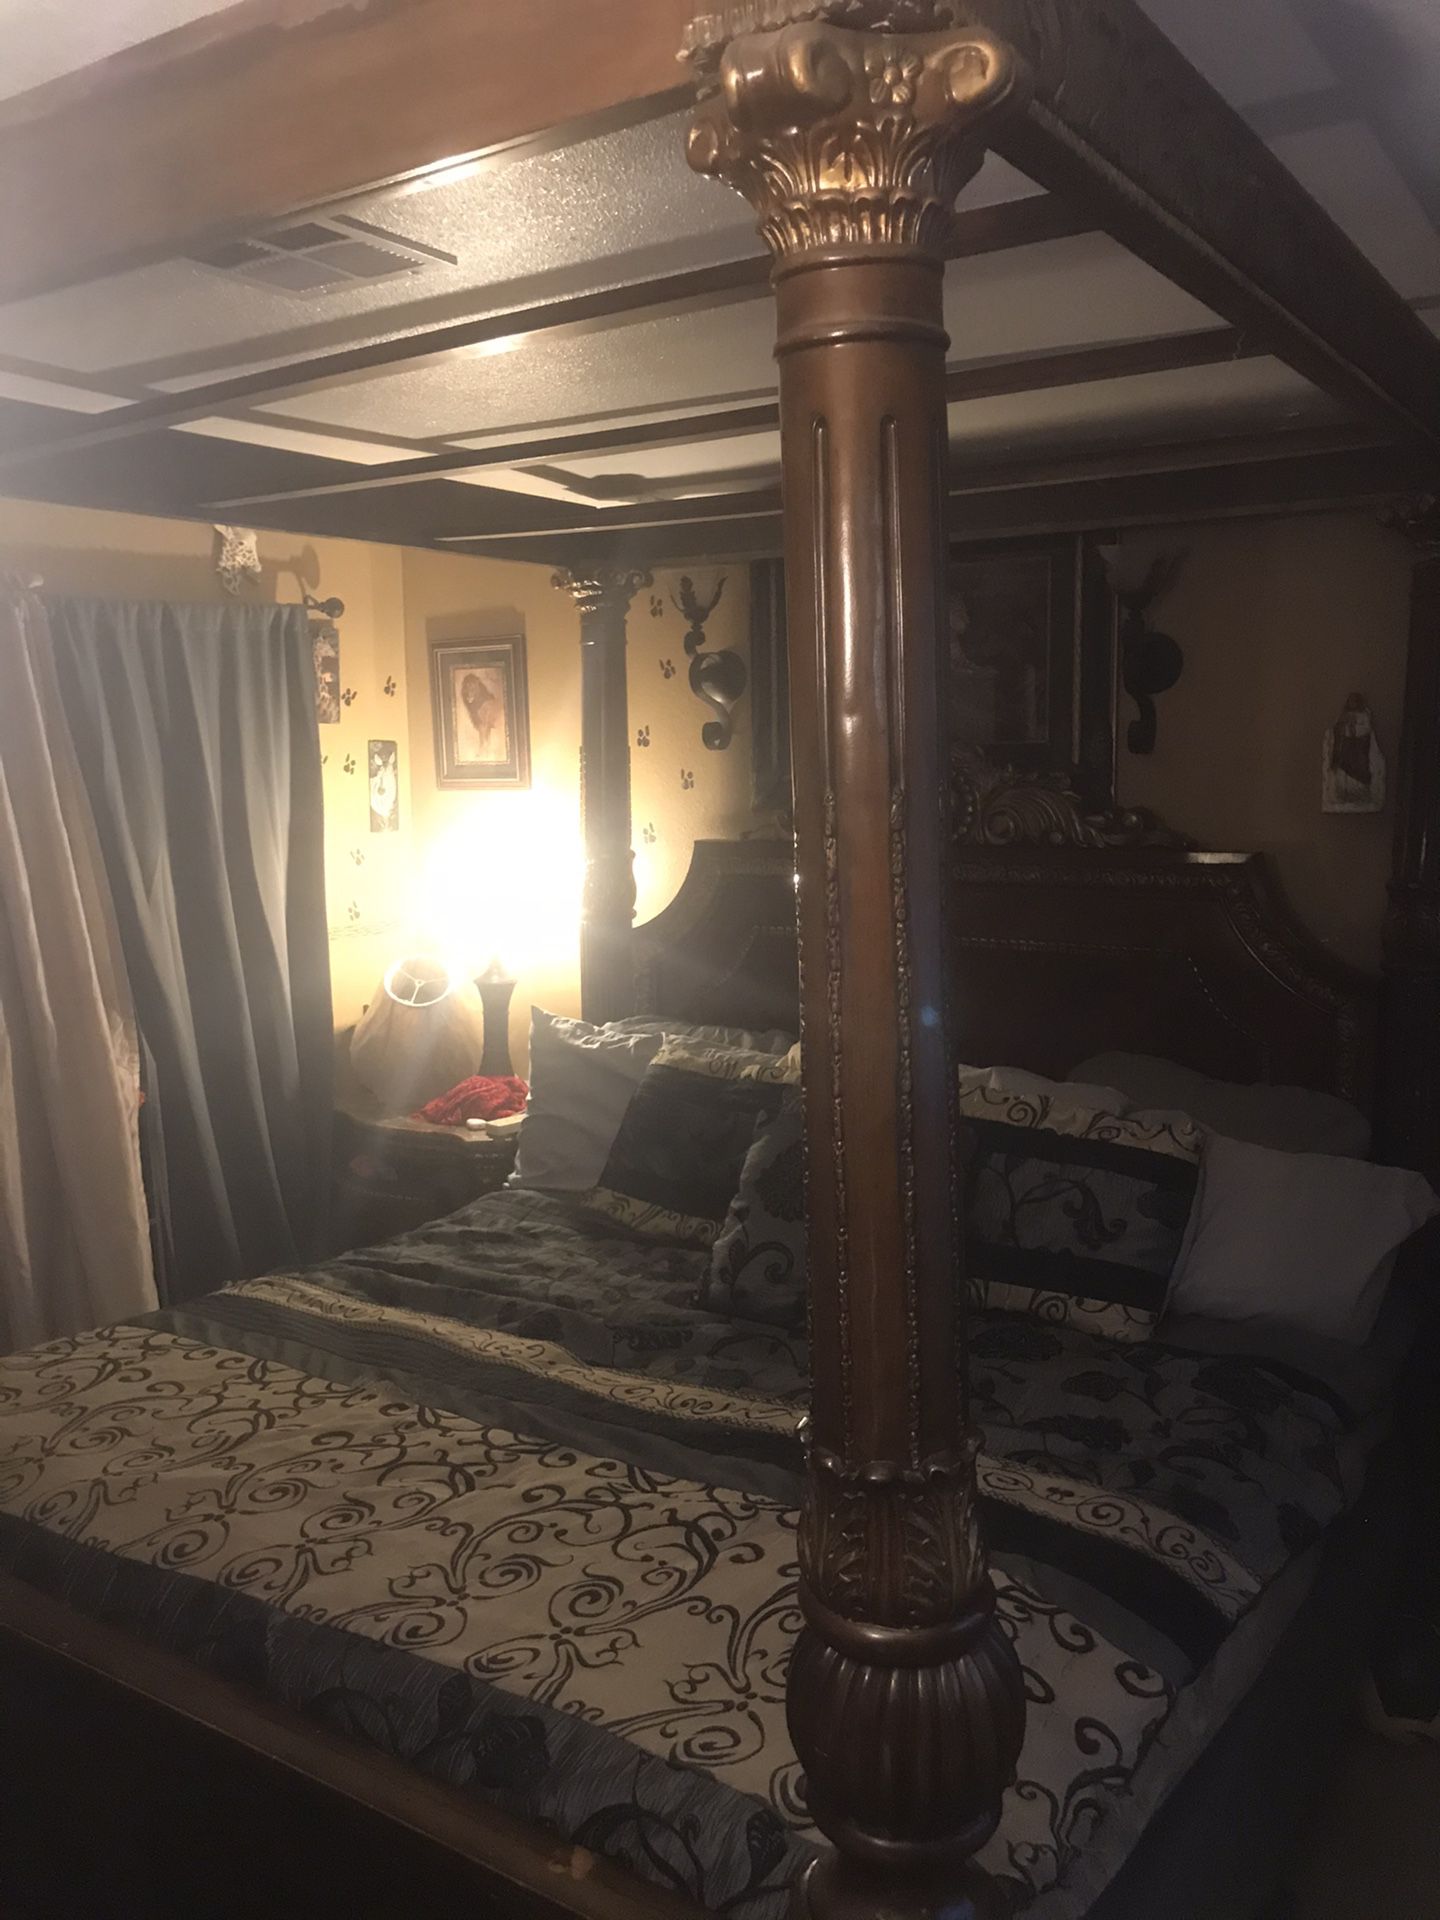 King size bedroom set